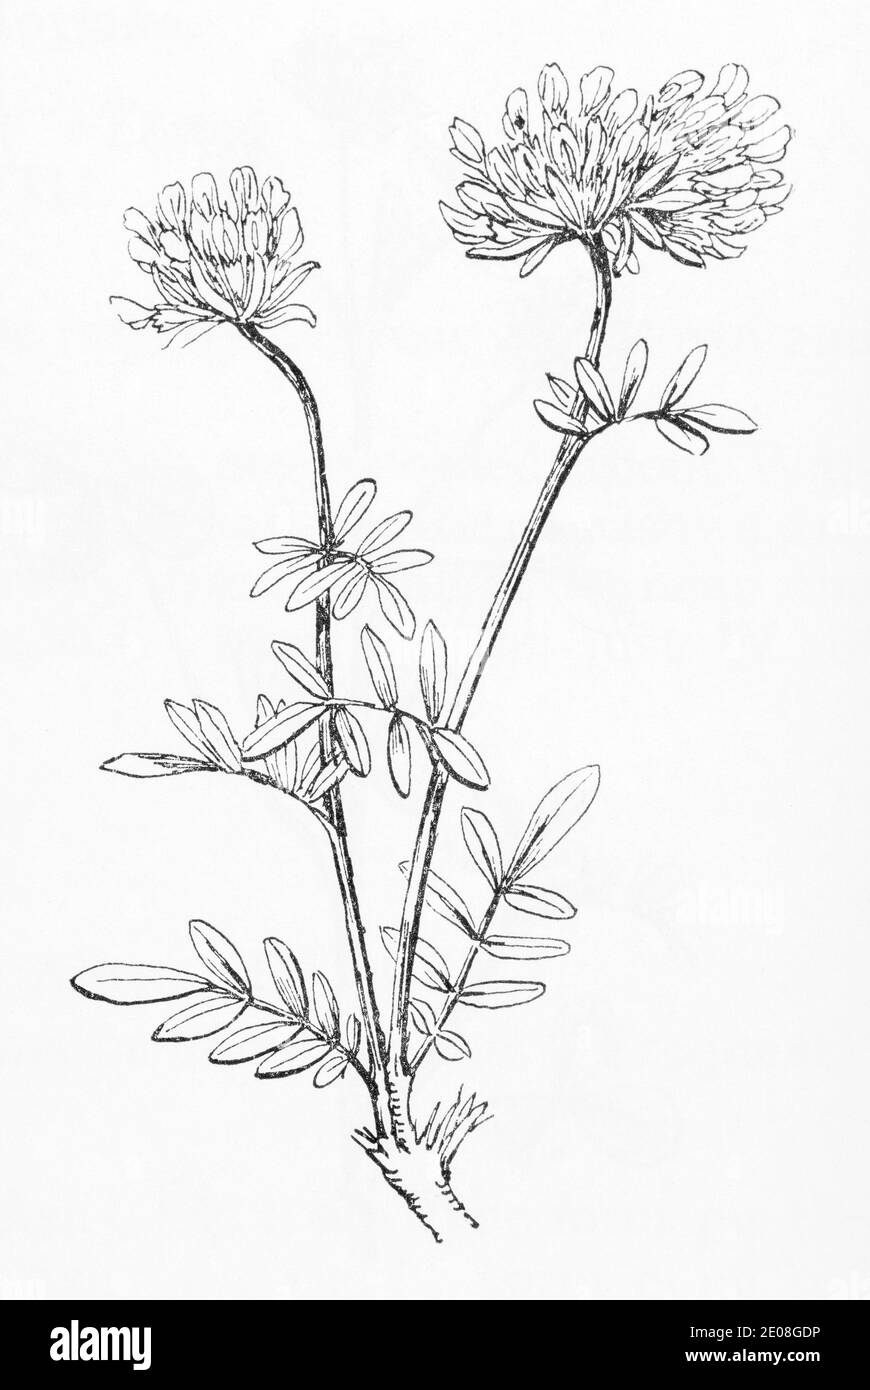 Ancienne gravure d'illustration botanique de rein Vetch / Anthyllis vulneraria. Plante médicinale traditionnelle. Voir Remarques Banque D'Images